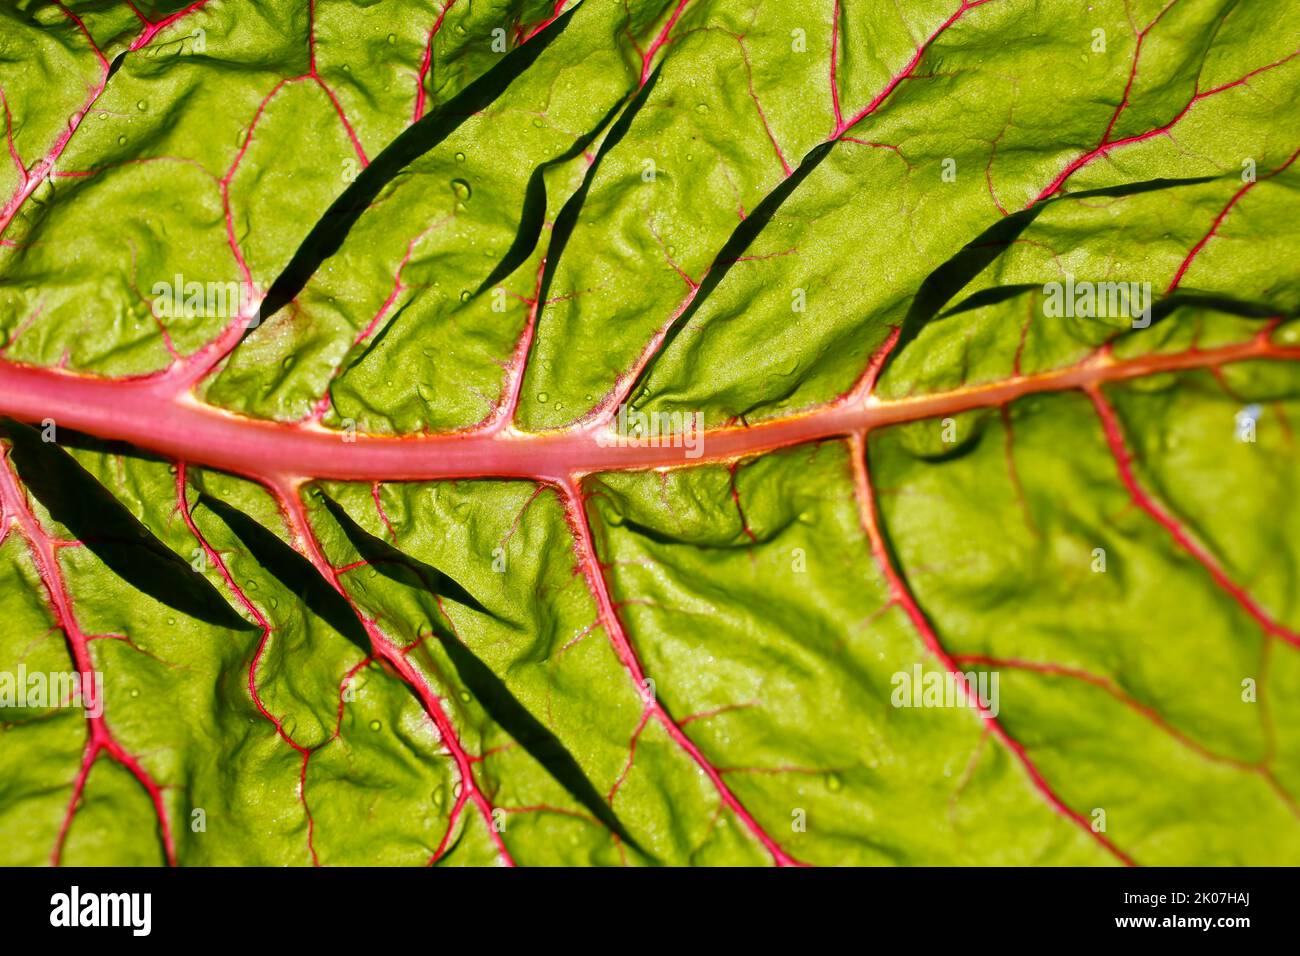 Beetroot (Beta vulgaris subsp. vulgaris), chard leaf, vegetable, healthy, vegetarian, Swabian cuisine, typical Swabian reinterpreted, preparation of Stock Photo